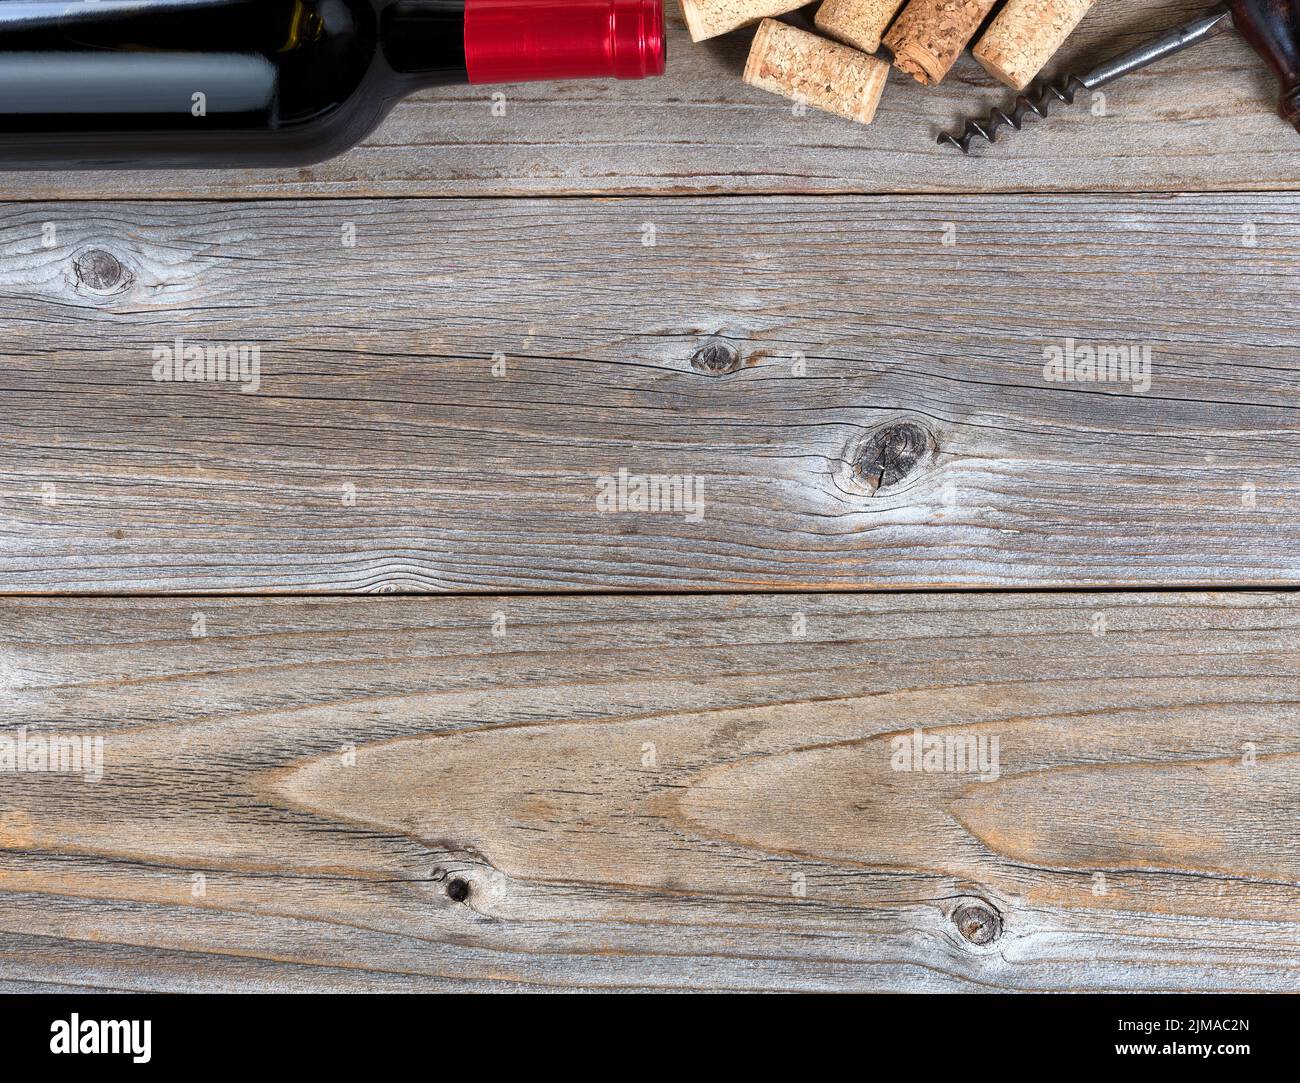 Oberer Rand einer Flasche Rotwein mit Vintage-Korkenzieher und gebrauchten Korken auf rustikalen Holzbrettern Stockfoto